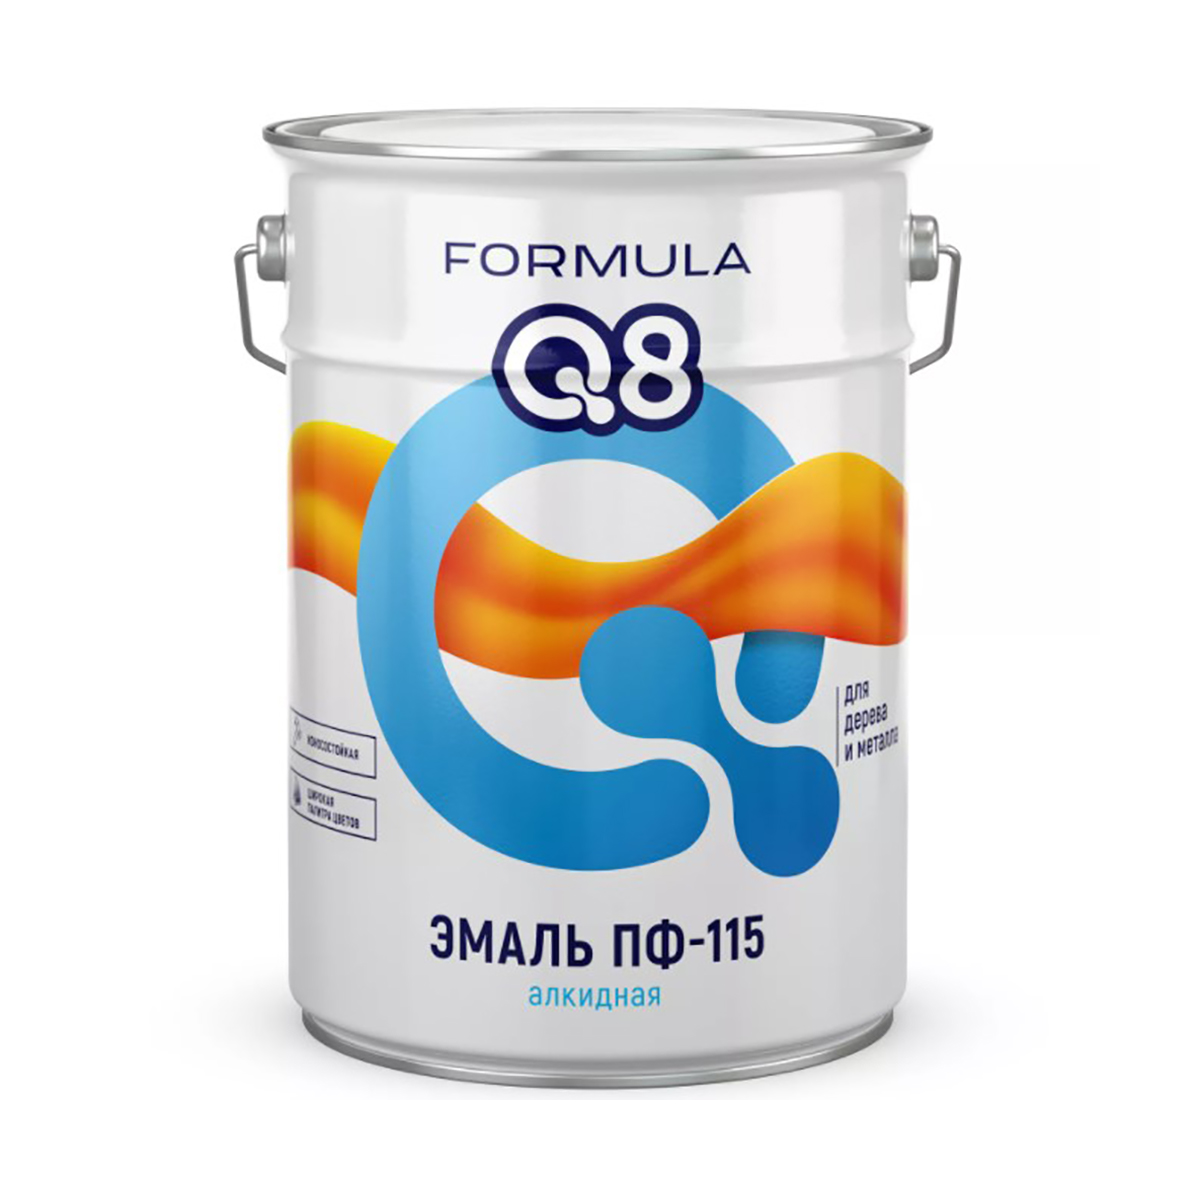 фото Эмаль пф-115 алкидная formula q8, глянцевая, 20 кг, красная